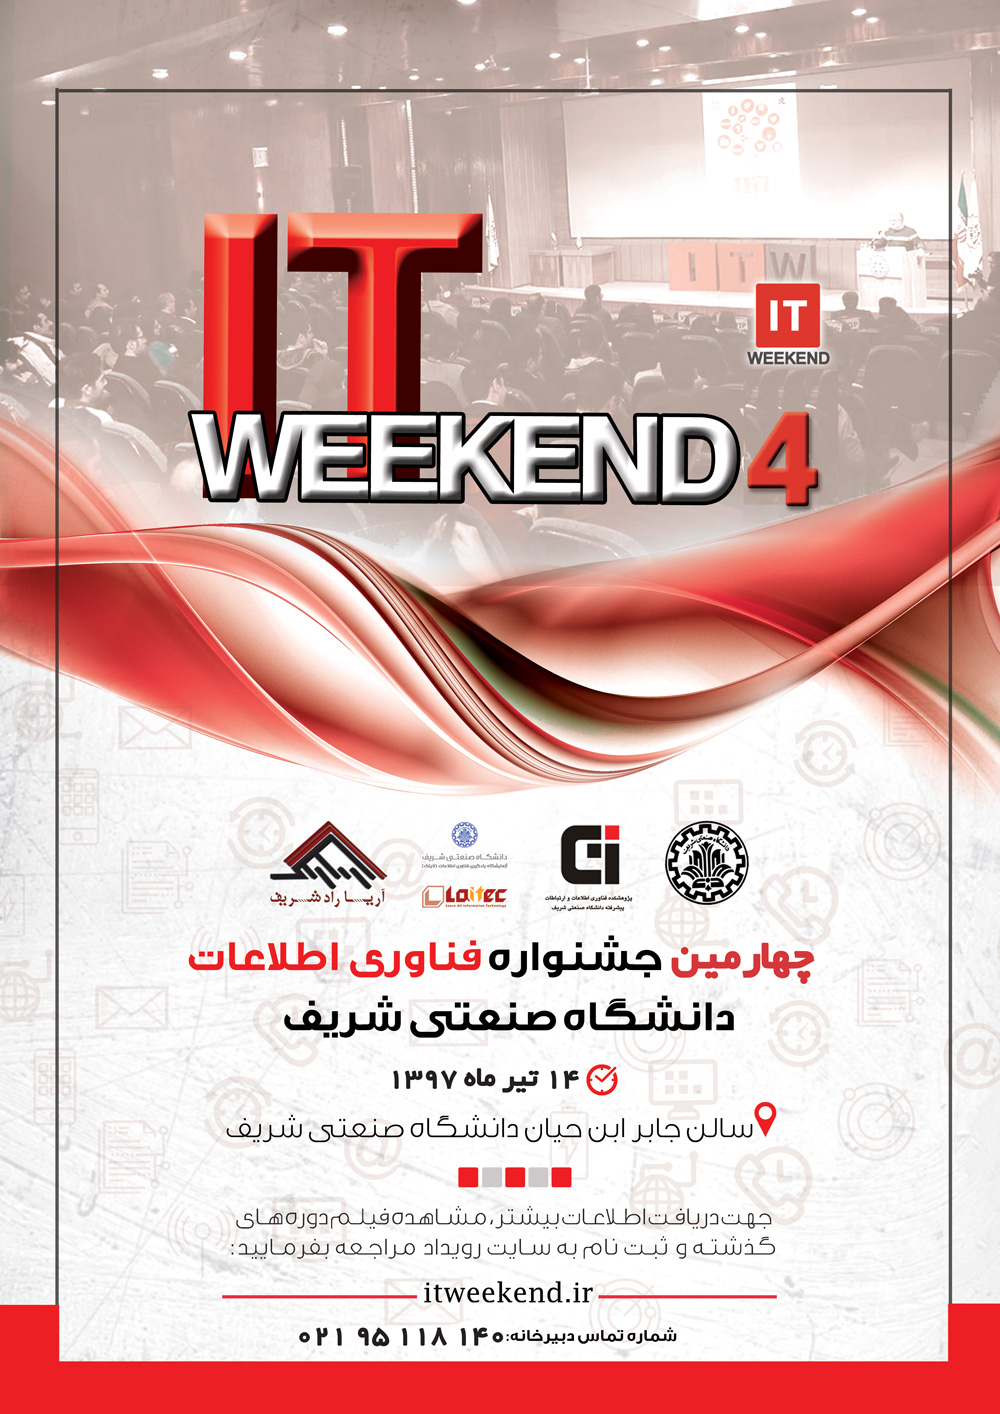 ثبت نام در چهارمین جشنواره فناوری اطلاعات دانشگاه صنعتی شریف  آغاز شد.